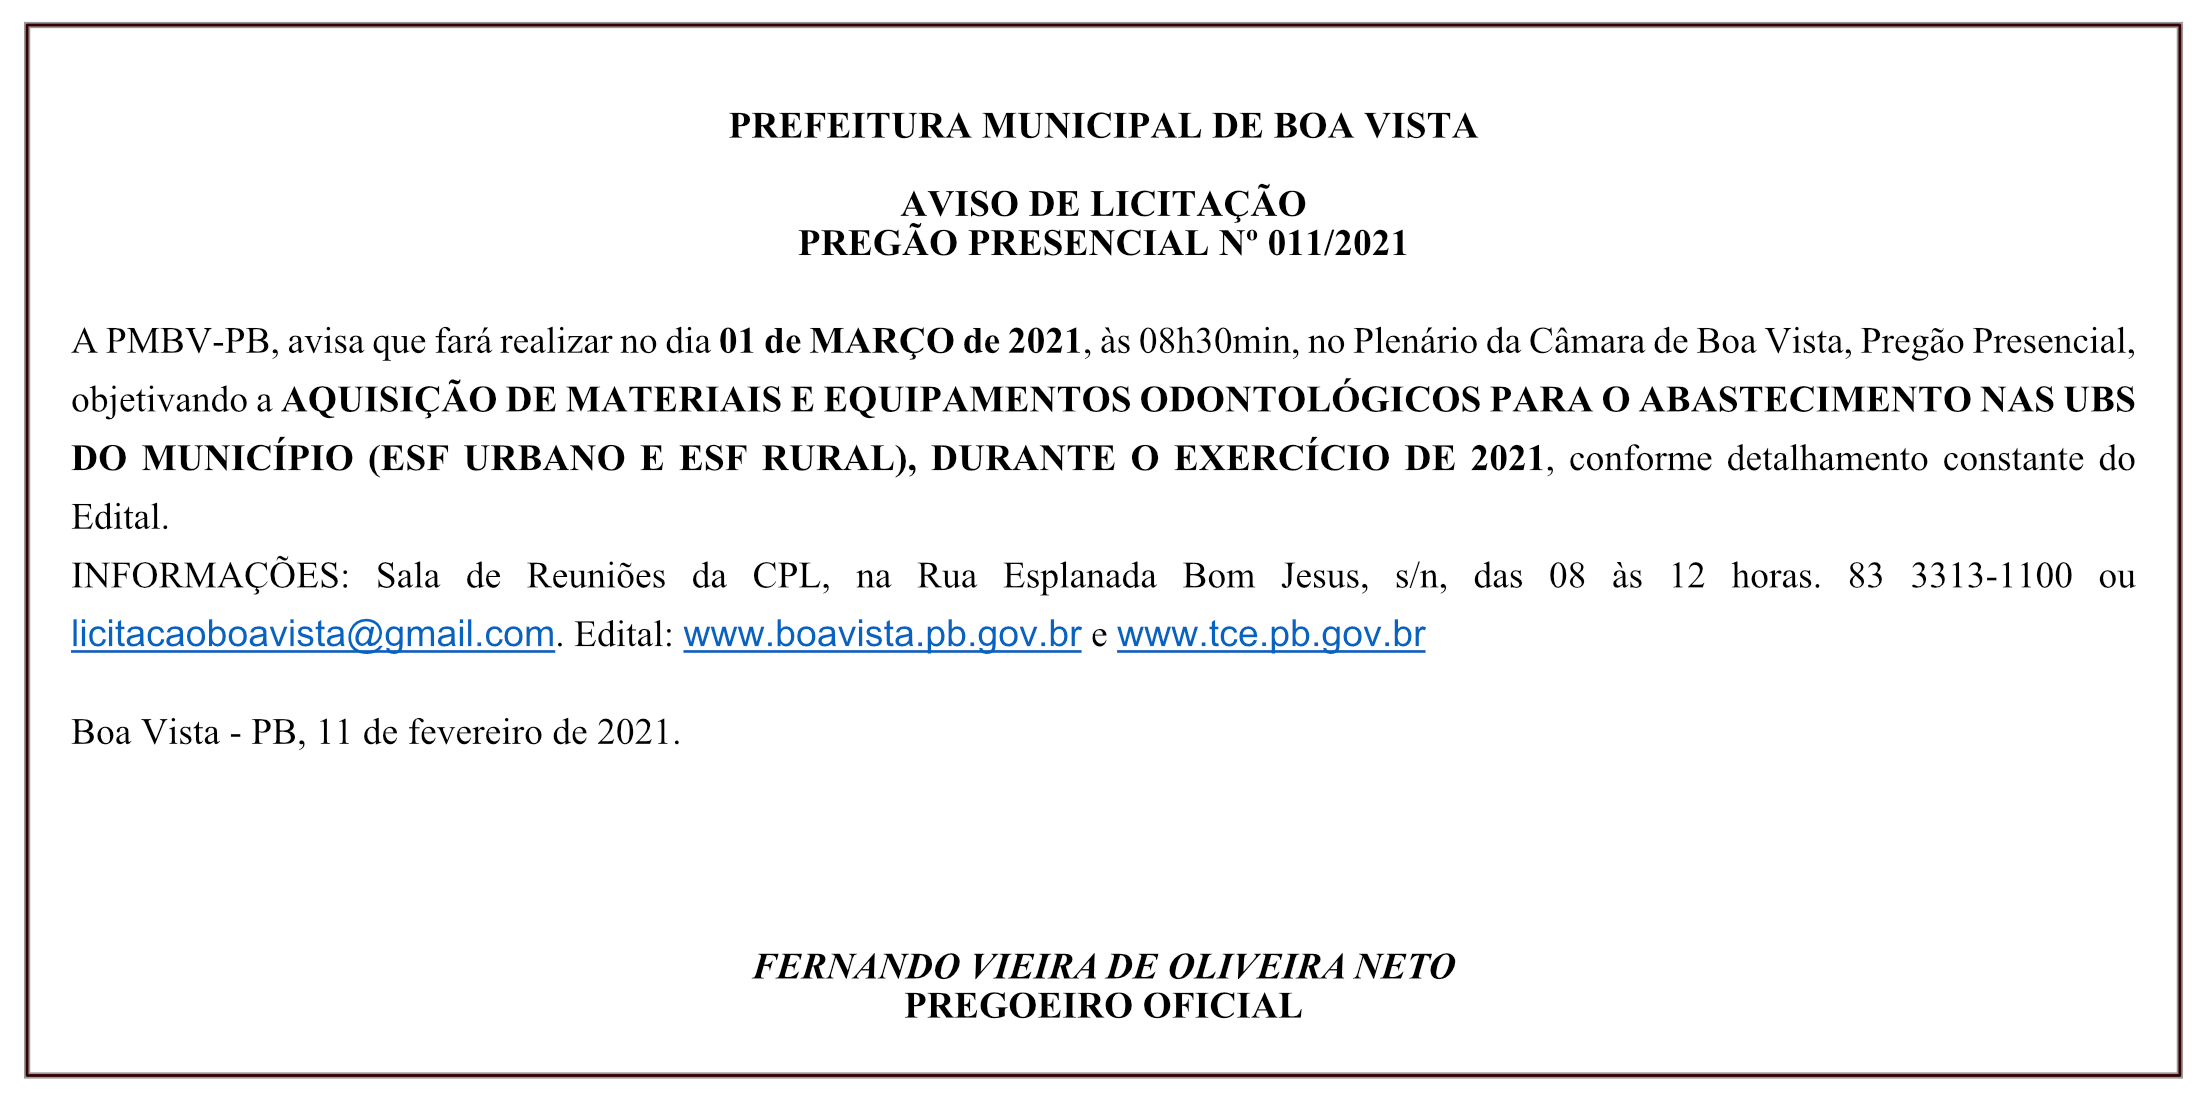 PREFEITURA MUNICIPAL DE BOA VISTA – AVISO DE LICITAÇÃO – PREGÃO PRESENCIAL Nº 011/2021